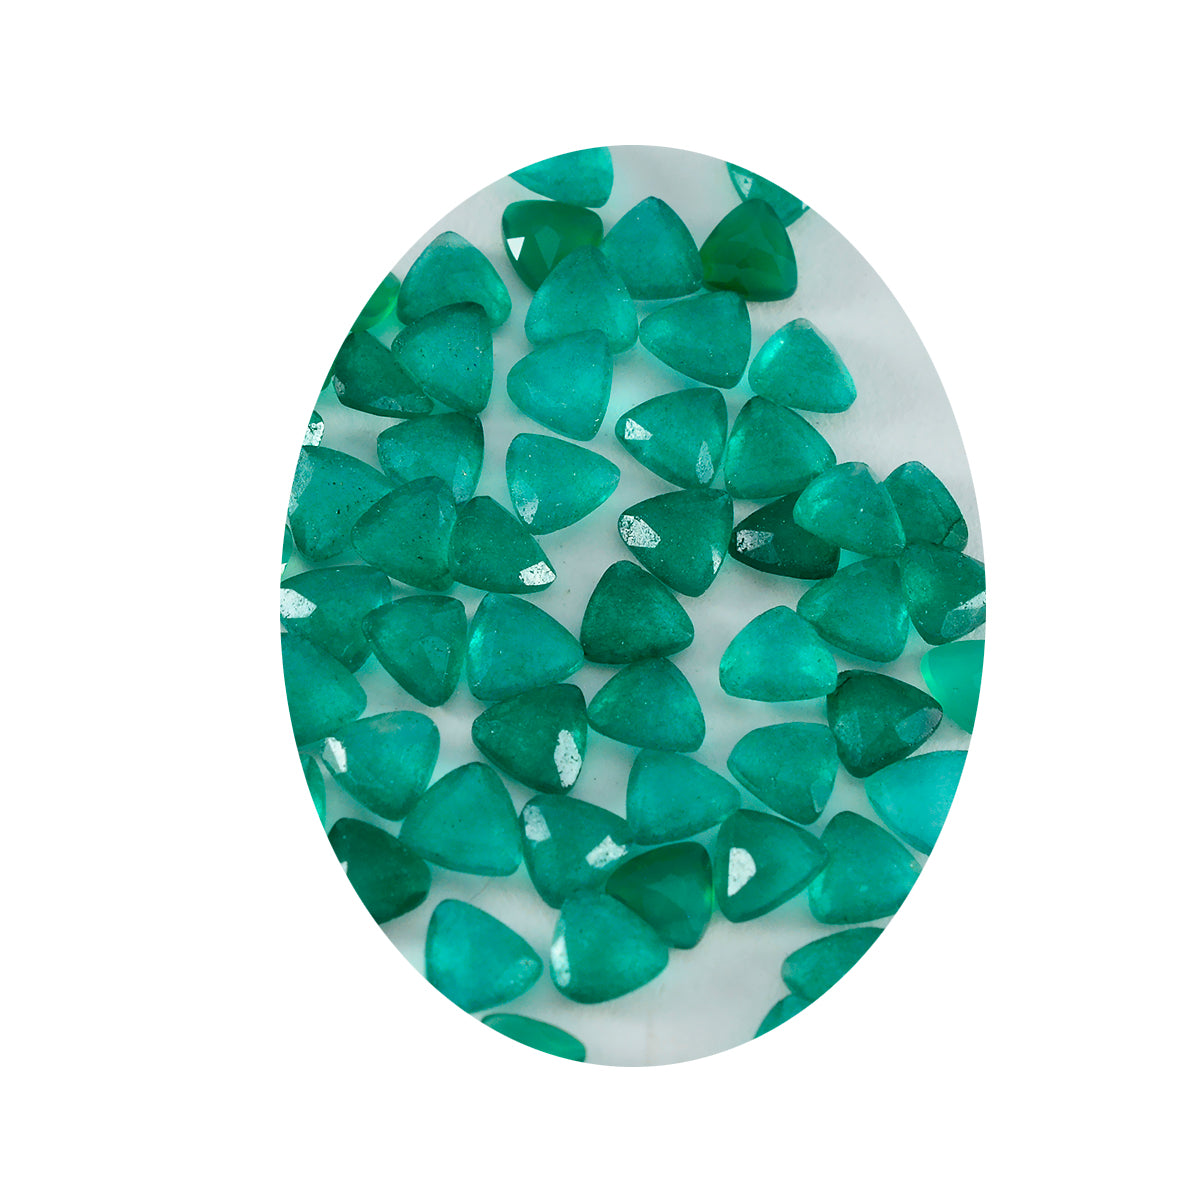 riyogems 1 шт., натуральная зеленая яшма, граненая 6x6 мм, форма триллиона, качество A1, свободный драгоценный камень